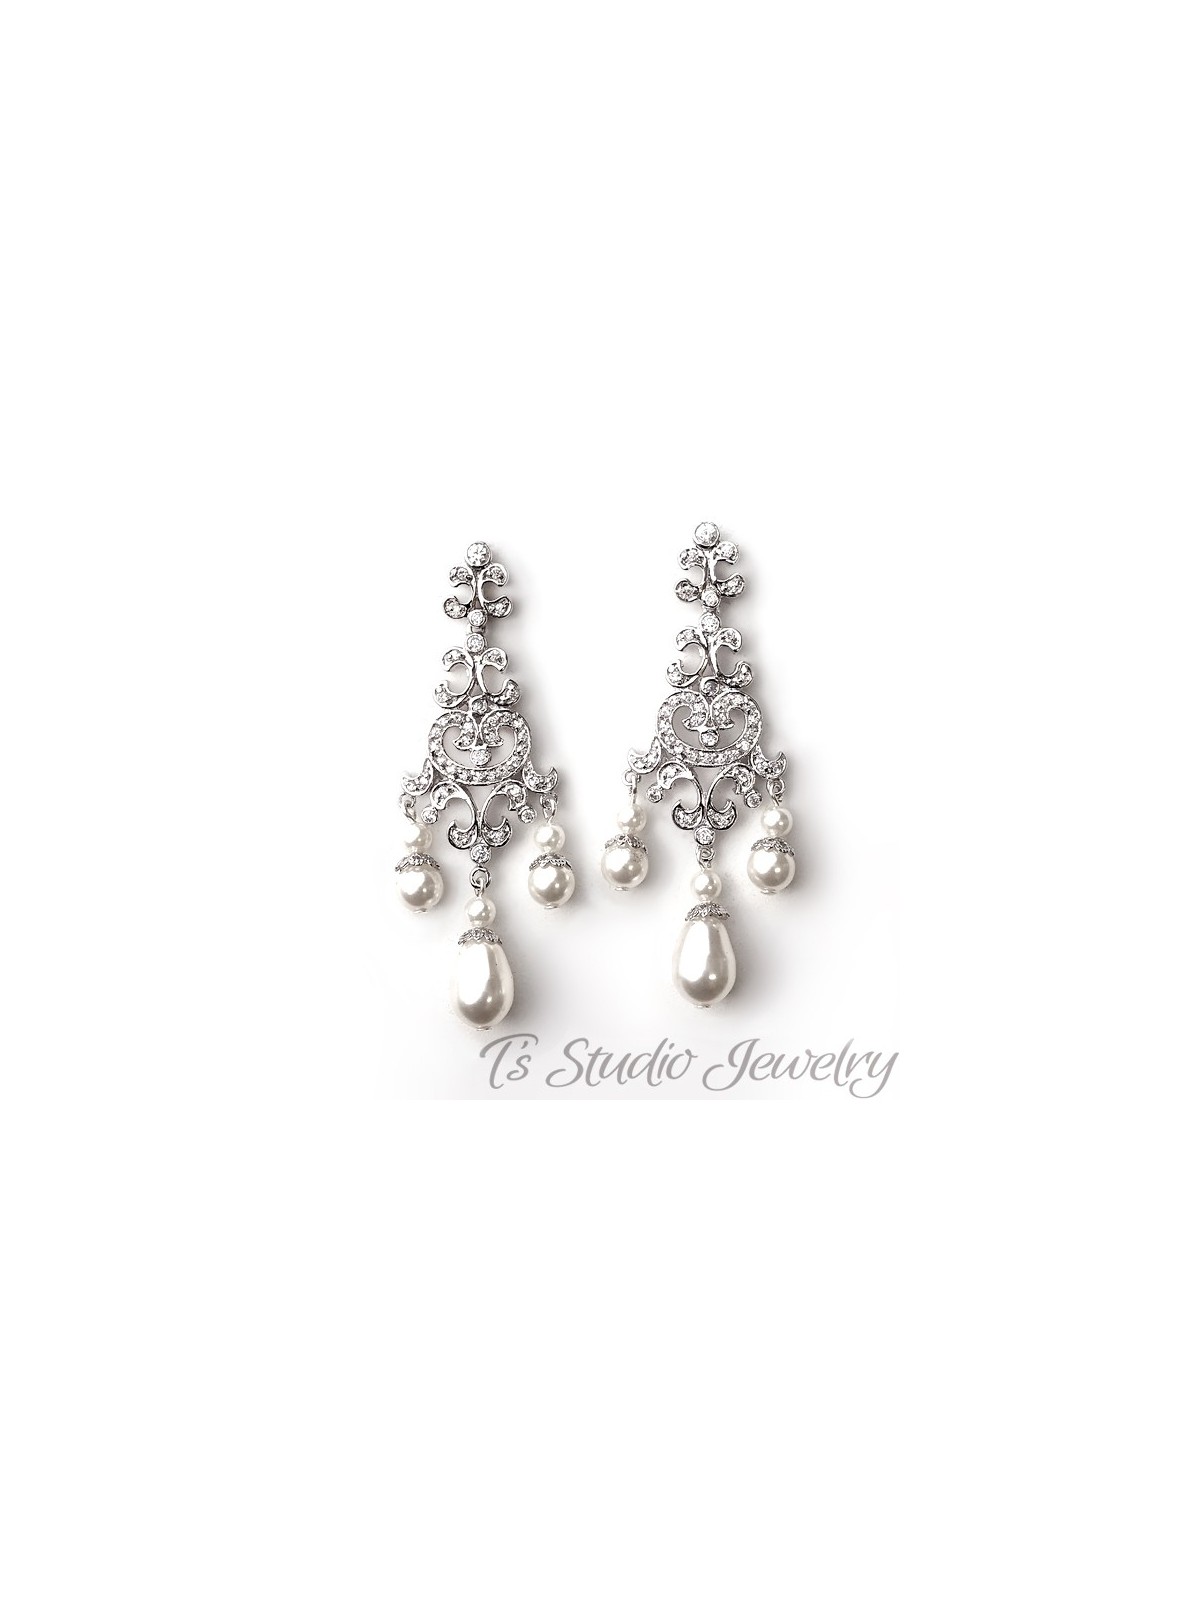 Pearl Rhinestone Bridal Chandelier Earrings